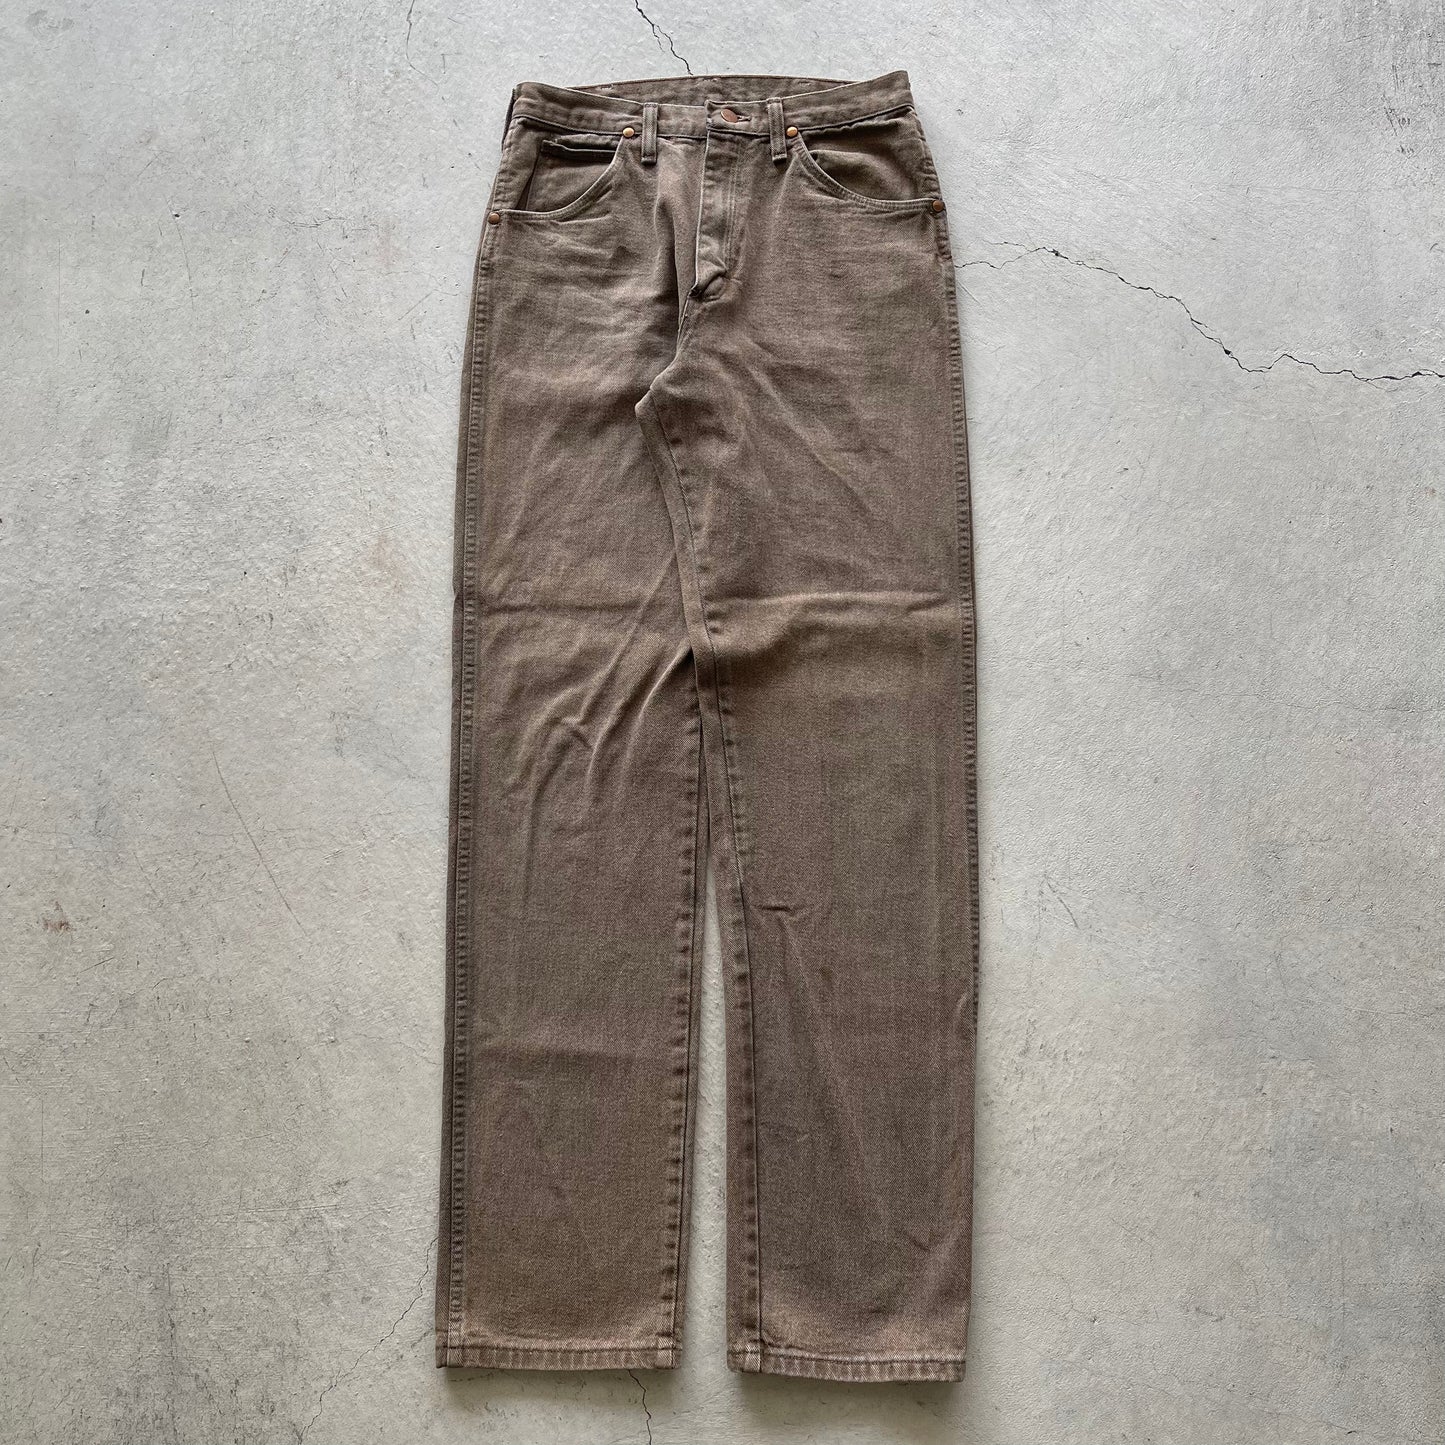 80s Tan Wrangler Jeans- 29